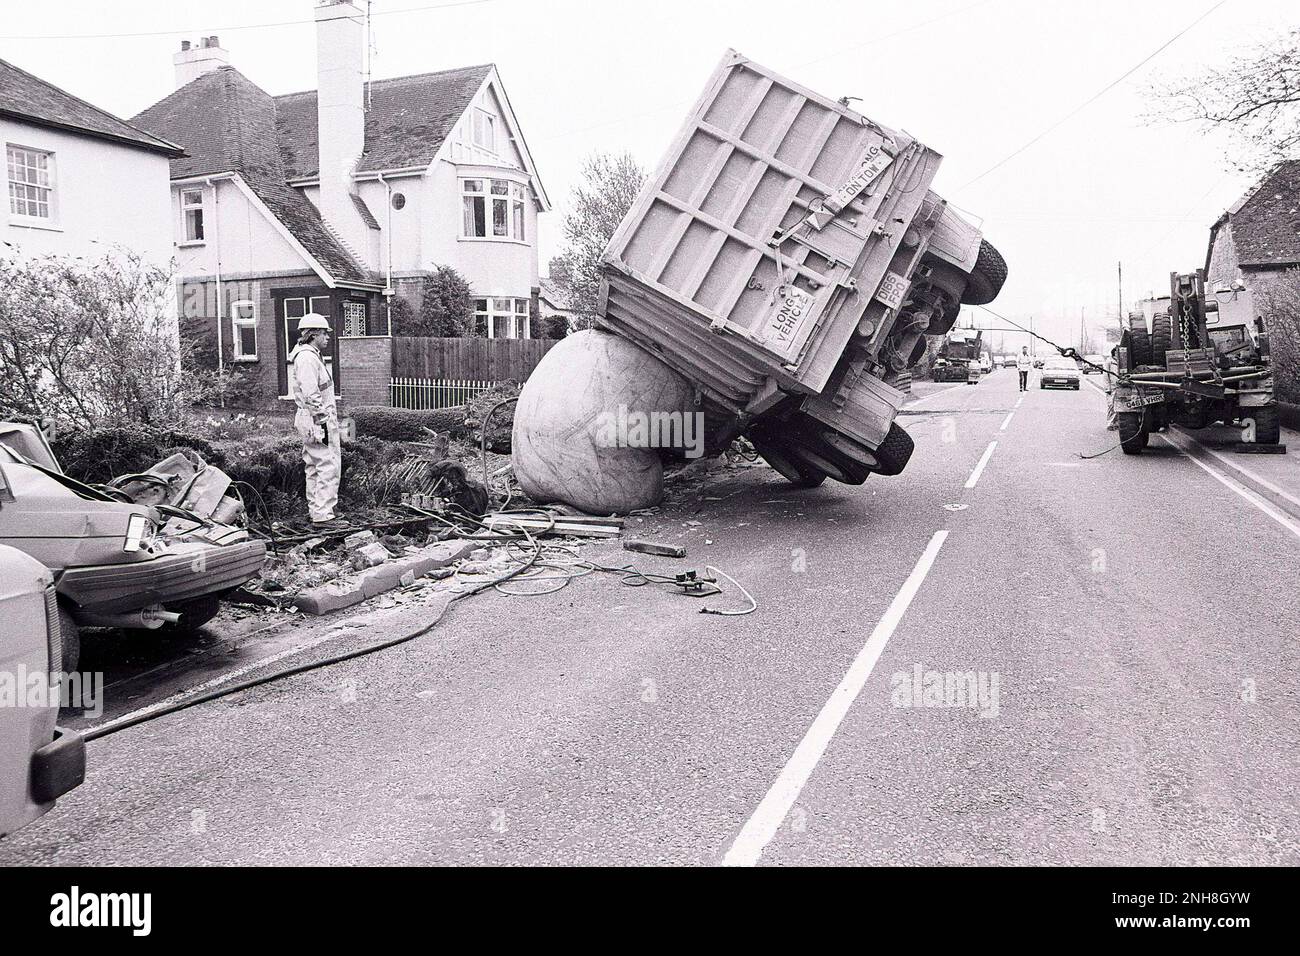 Nach einem Straßenverkehrsunfall im Dorf Stoford am A36 in der Nähe von Salisbury Wiltshire im März 1991 wird ein Lastwagen mit einem aufblasbaren Ball geborgen. Stockfoto